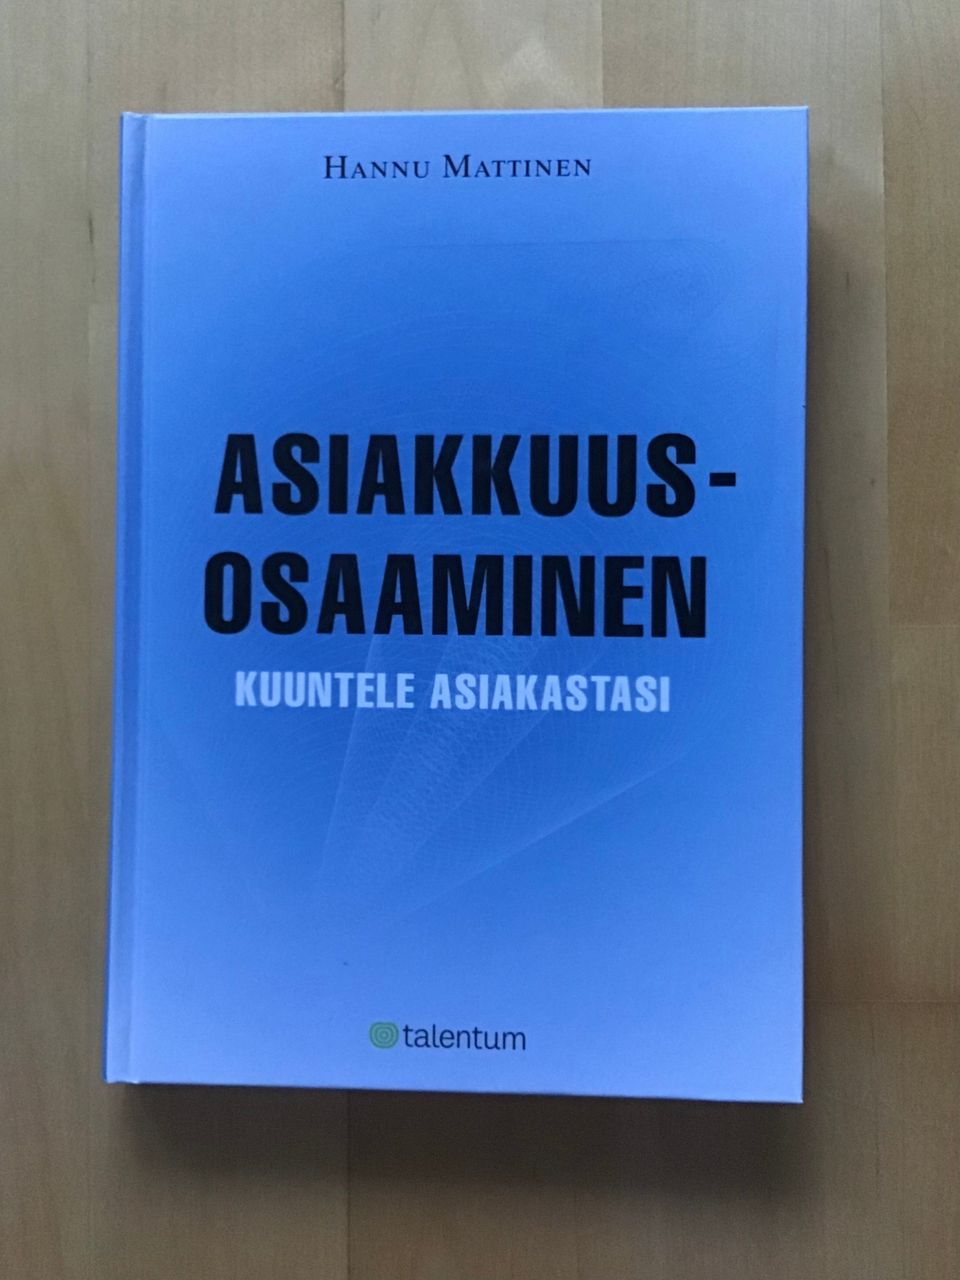 Hannu Mattinen : Asiakkuusosaaminen. Kuuntele asiakastasi ( 2006 )